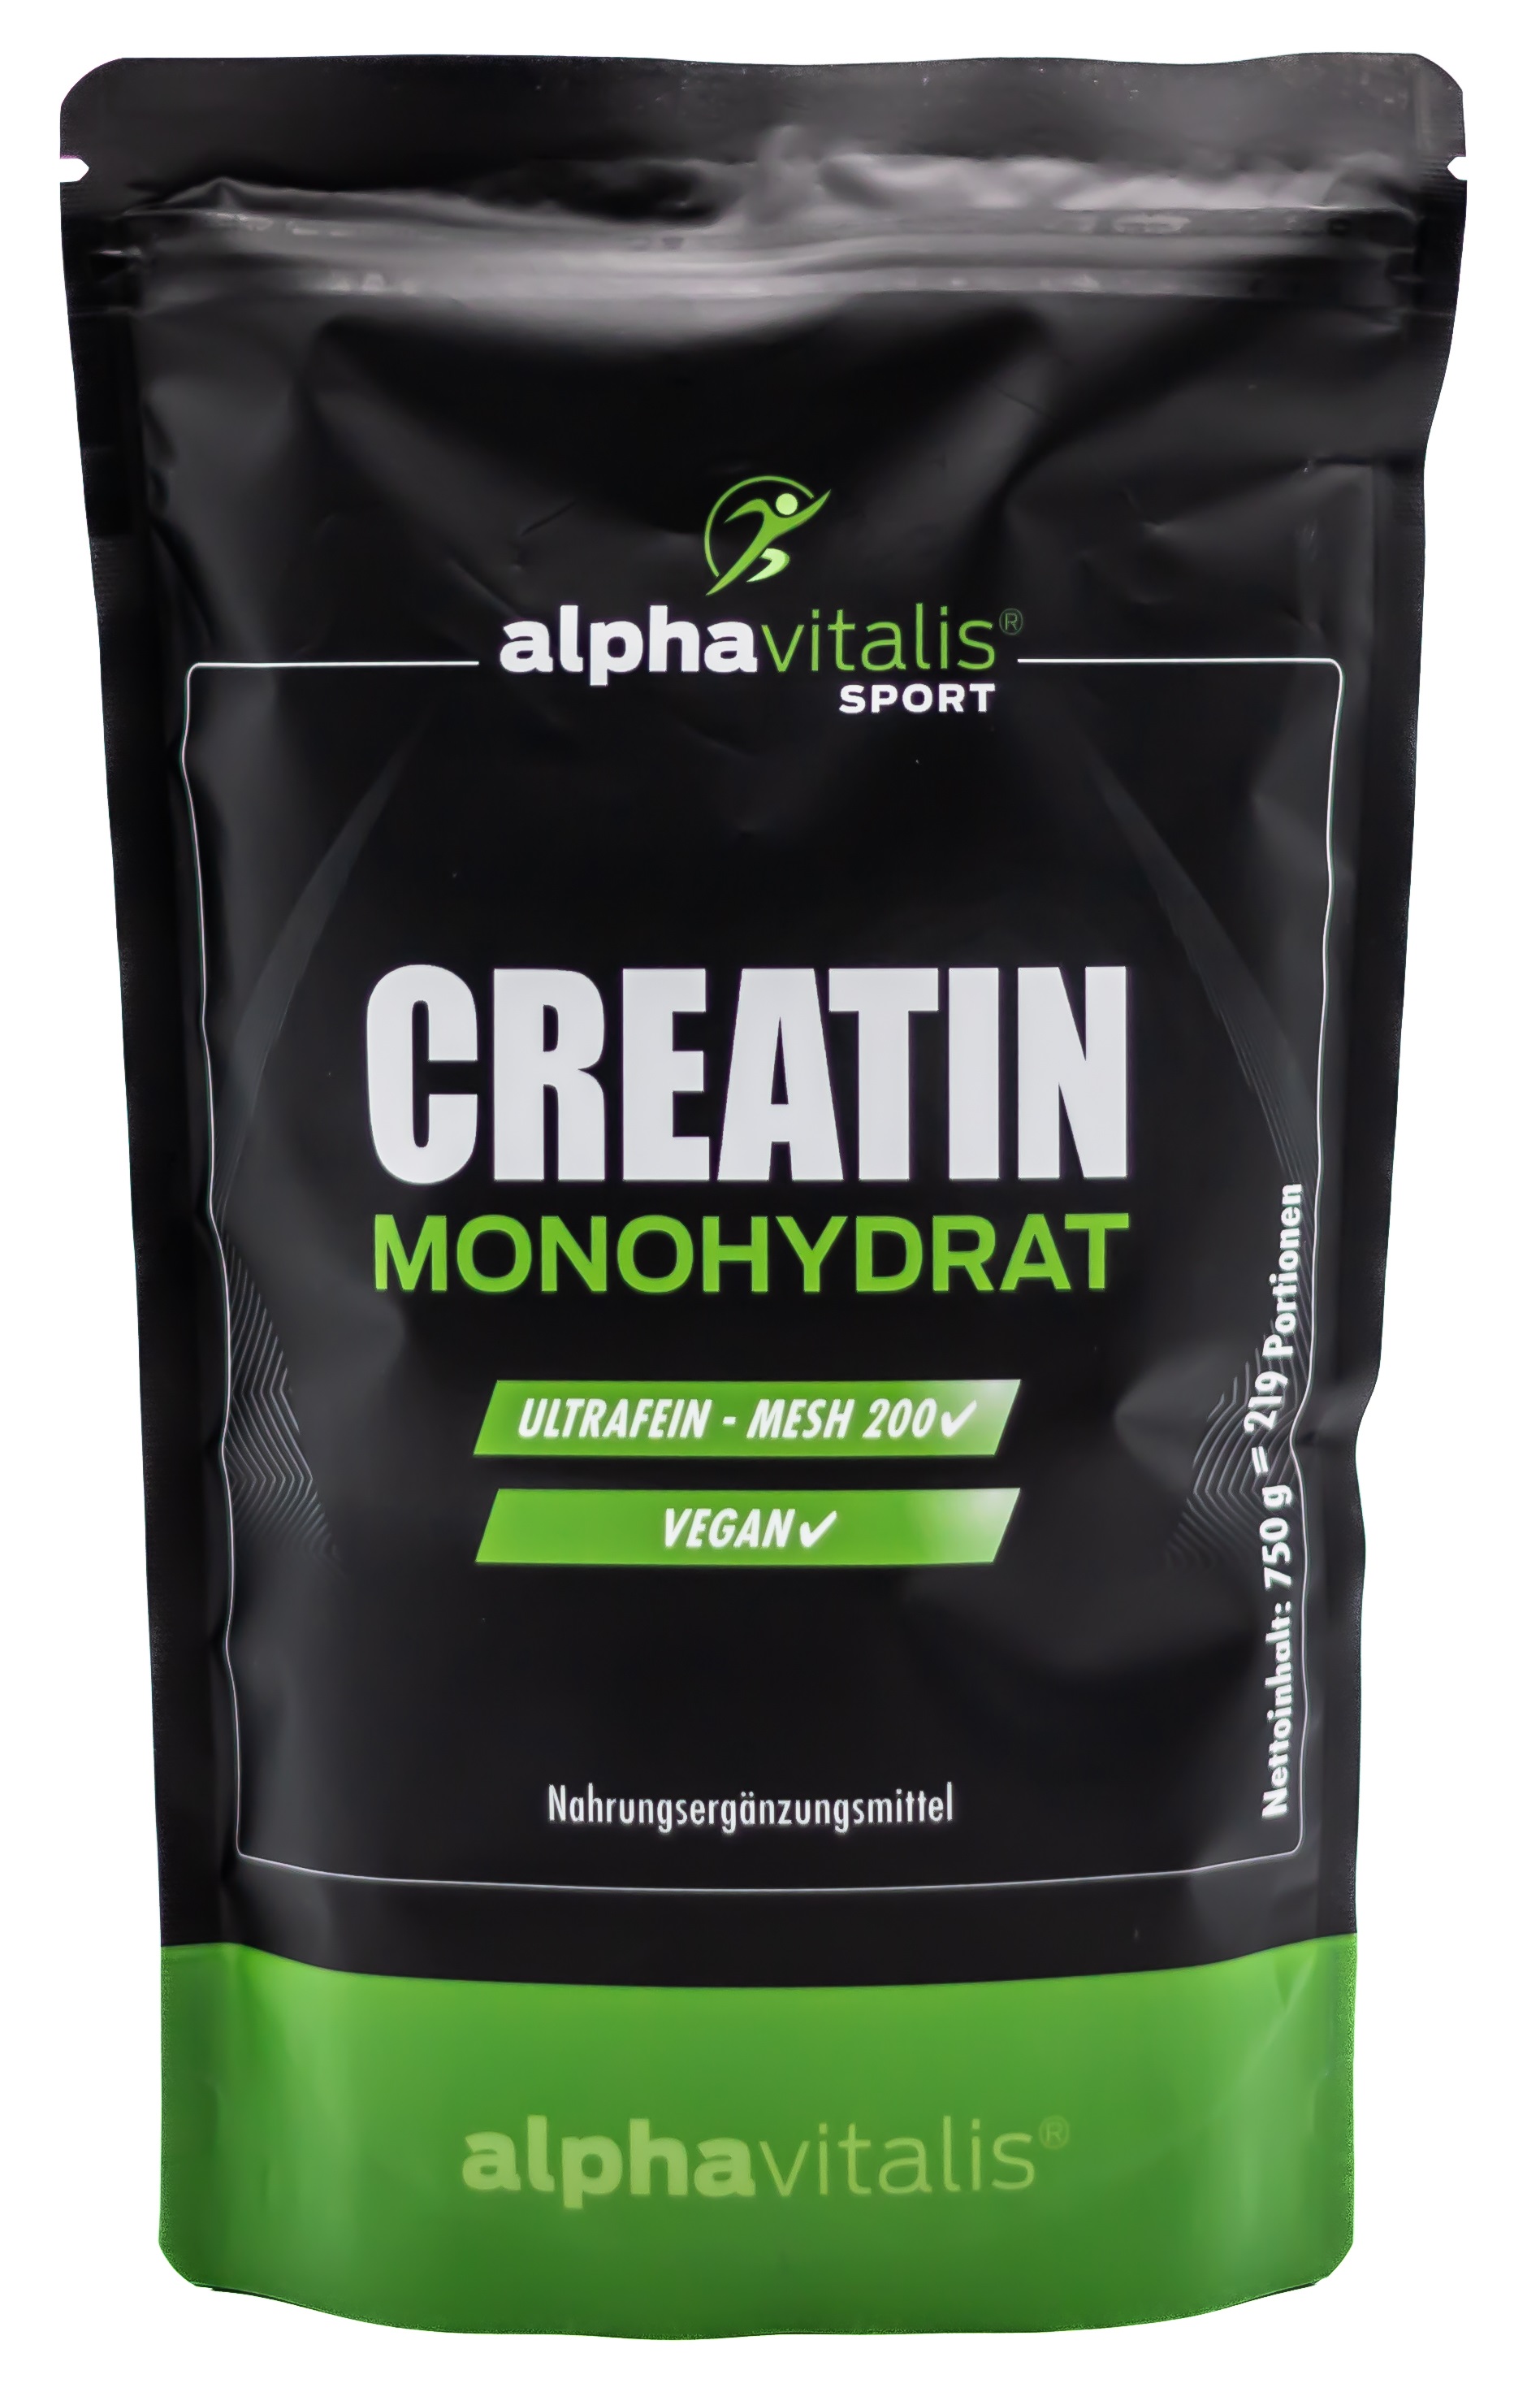 Alphavitalis Creatin Monohydrat | ultrafeine Mesh 200 Qualität